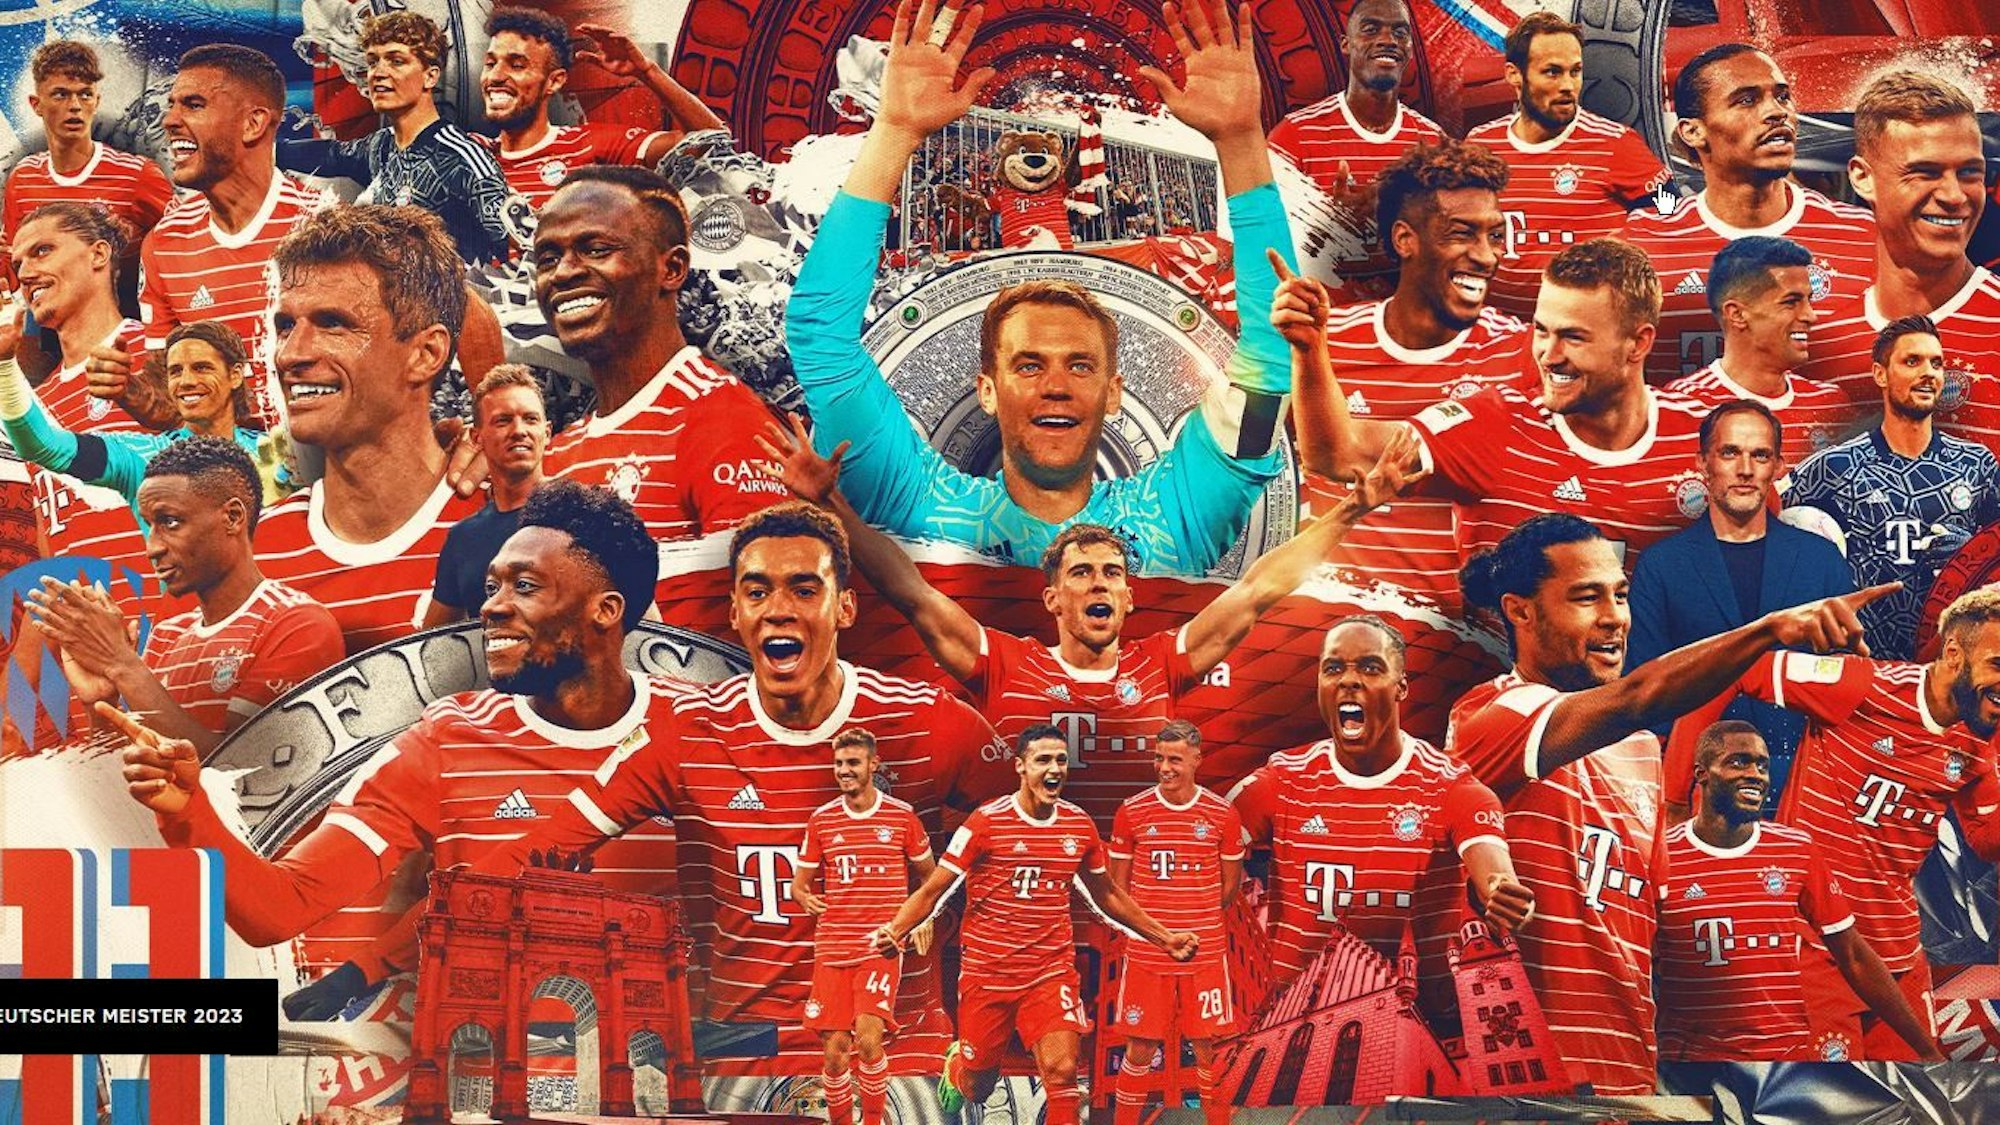 Das Meister-Poster des FC Bayern München.